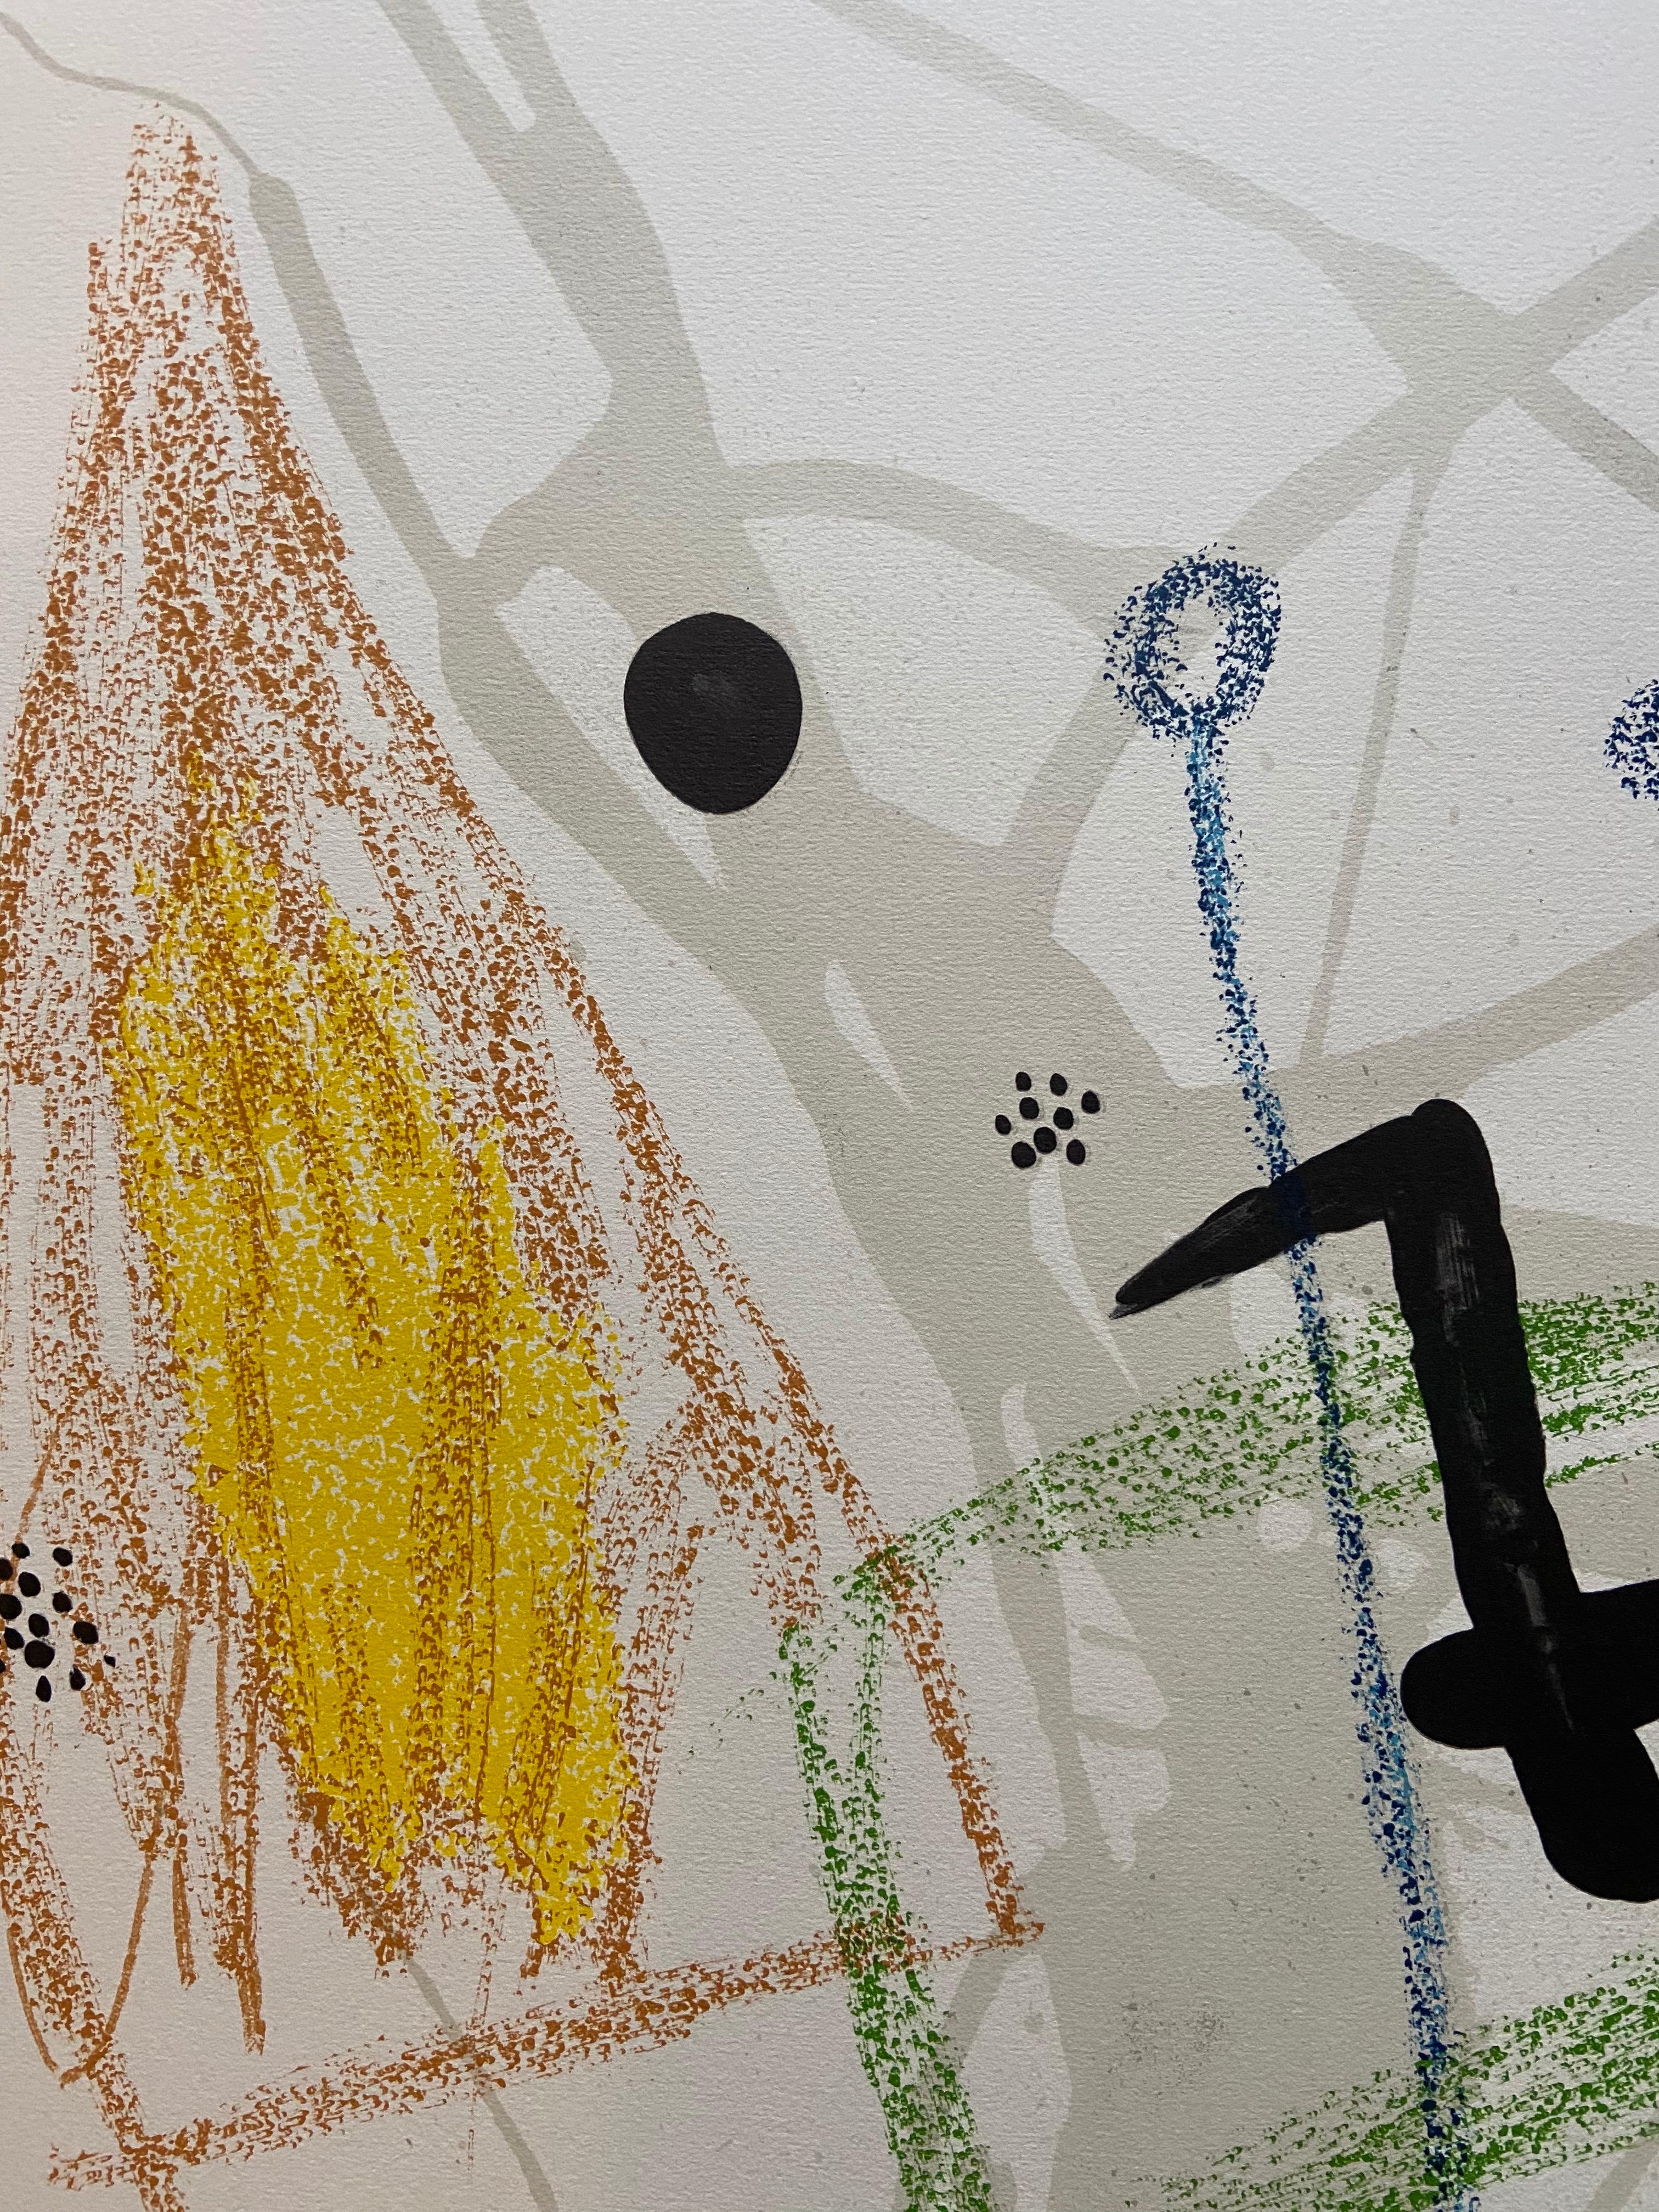 Joan MIRÓ - Maravillas con variaciones Acrósticas en el jardin de Miro 5  - Print by Joan Miró